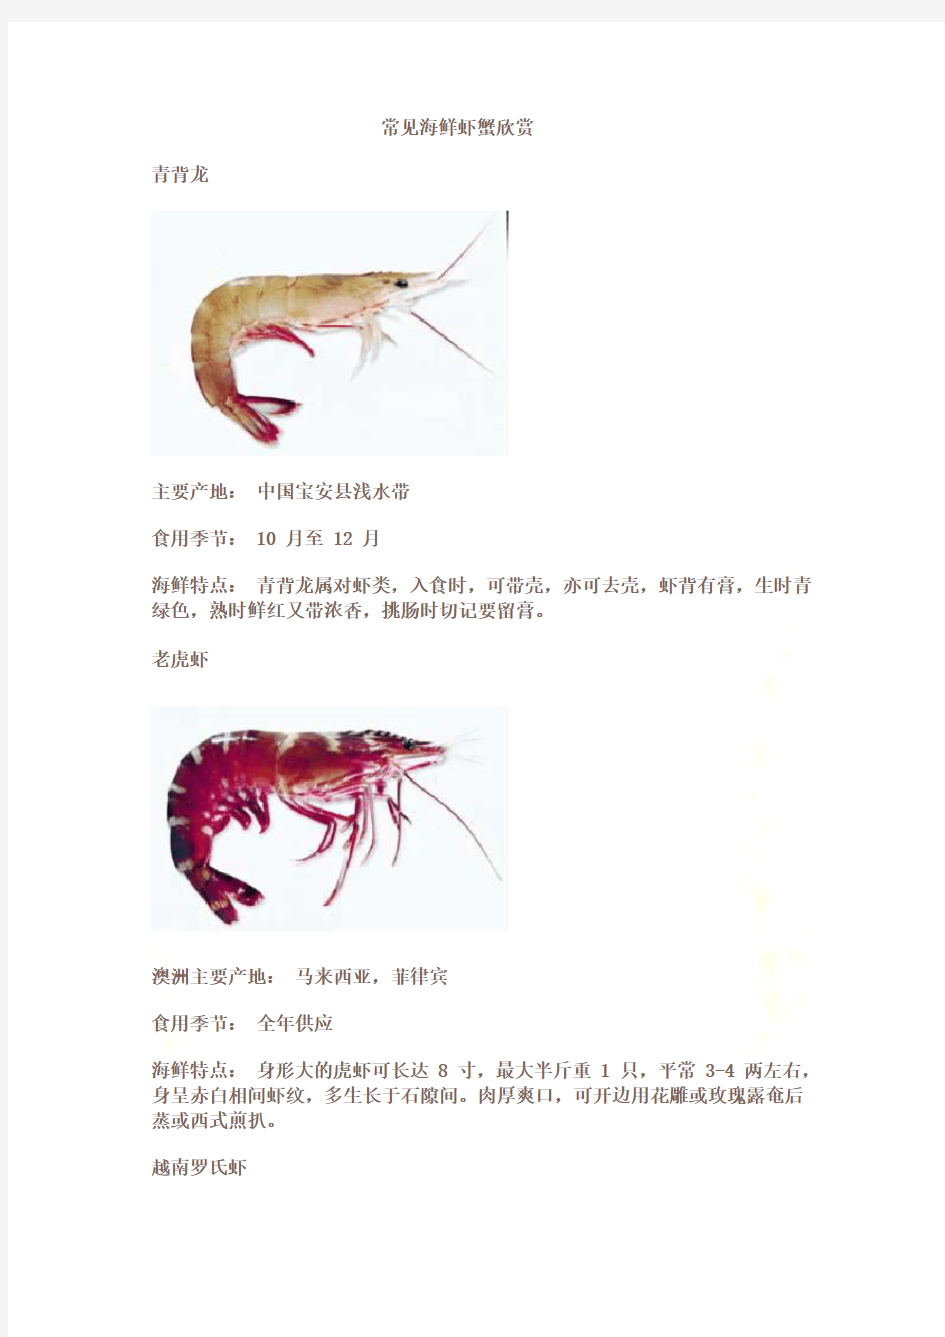 常见海鲜虾蟹欣赏